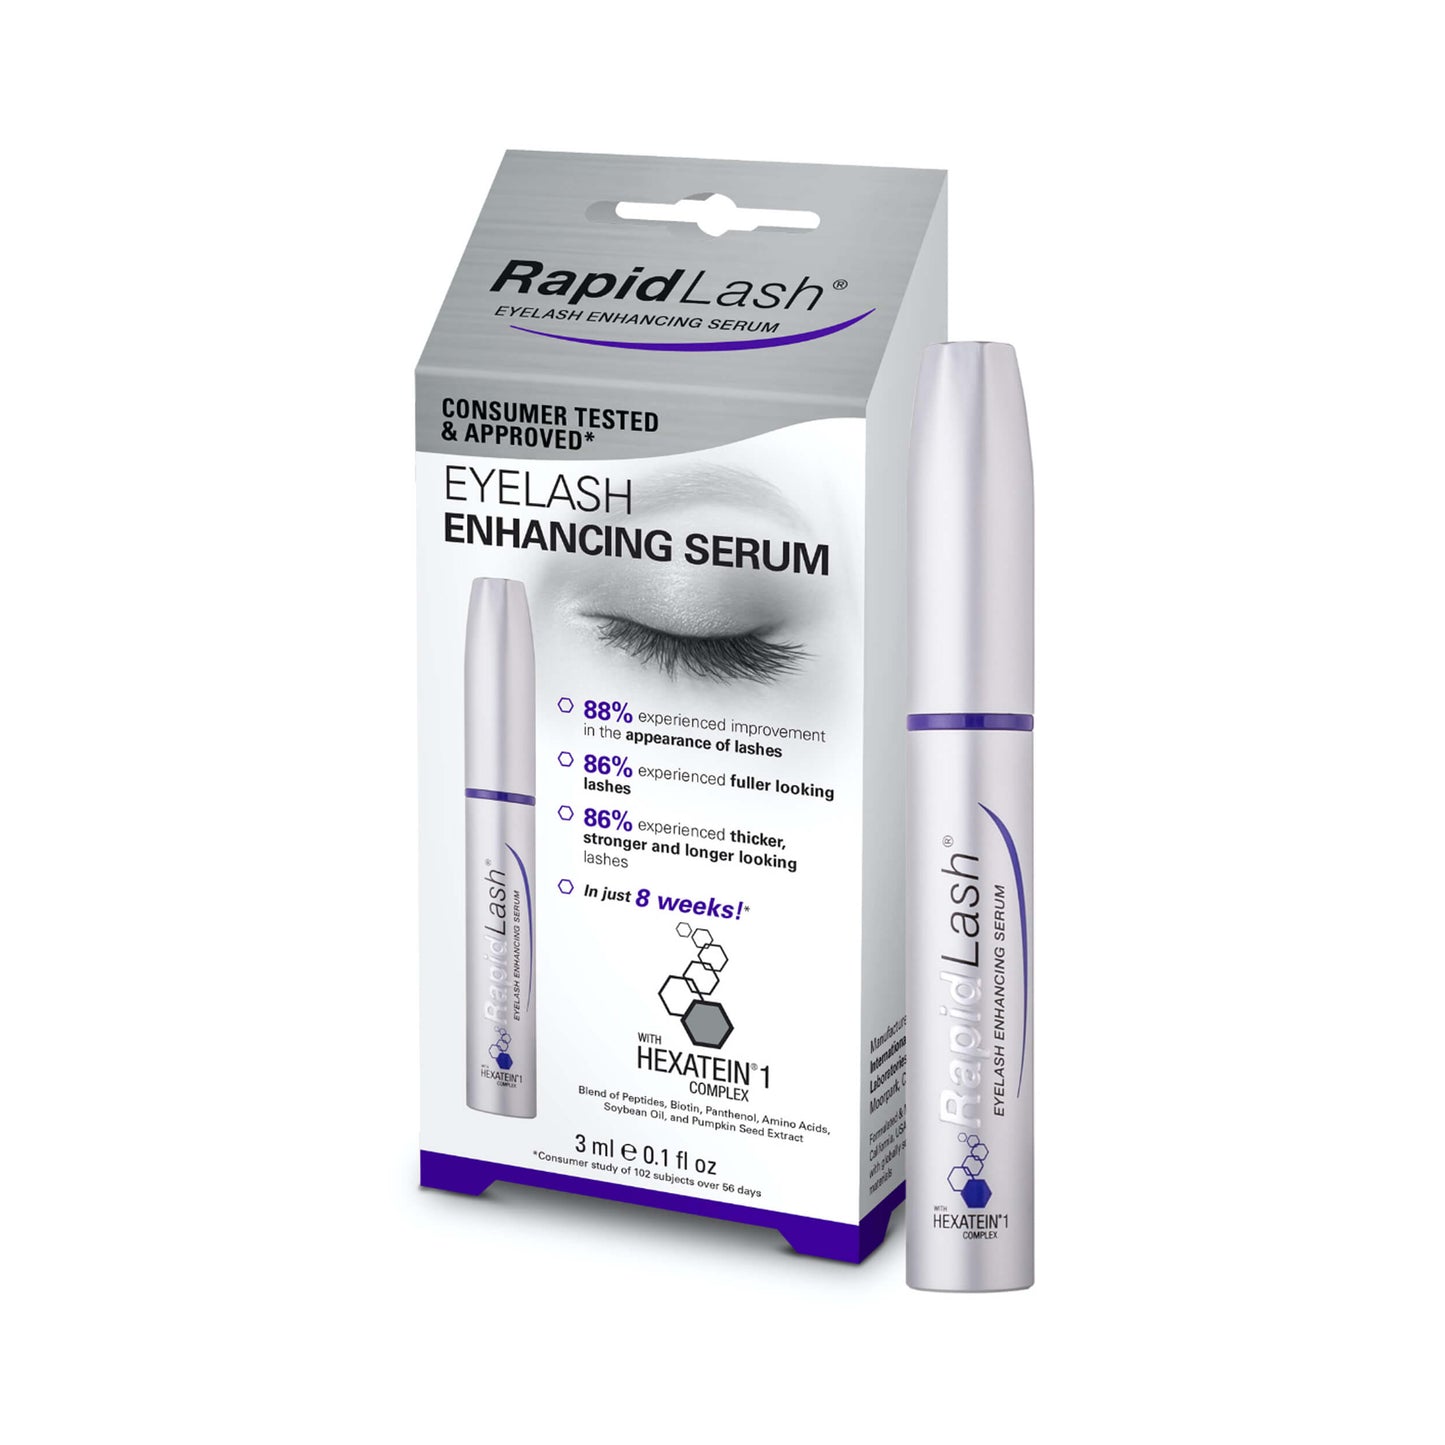 RapidLash Eyelash Enhancing Serum (with Hexatein 1 Complex) 3 mL